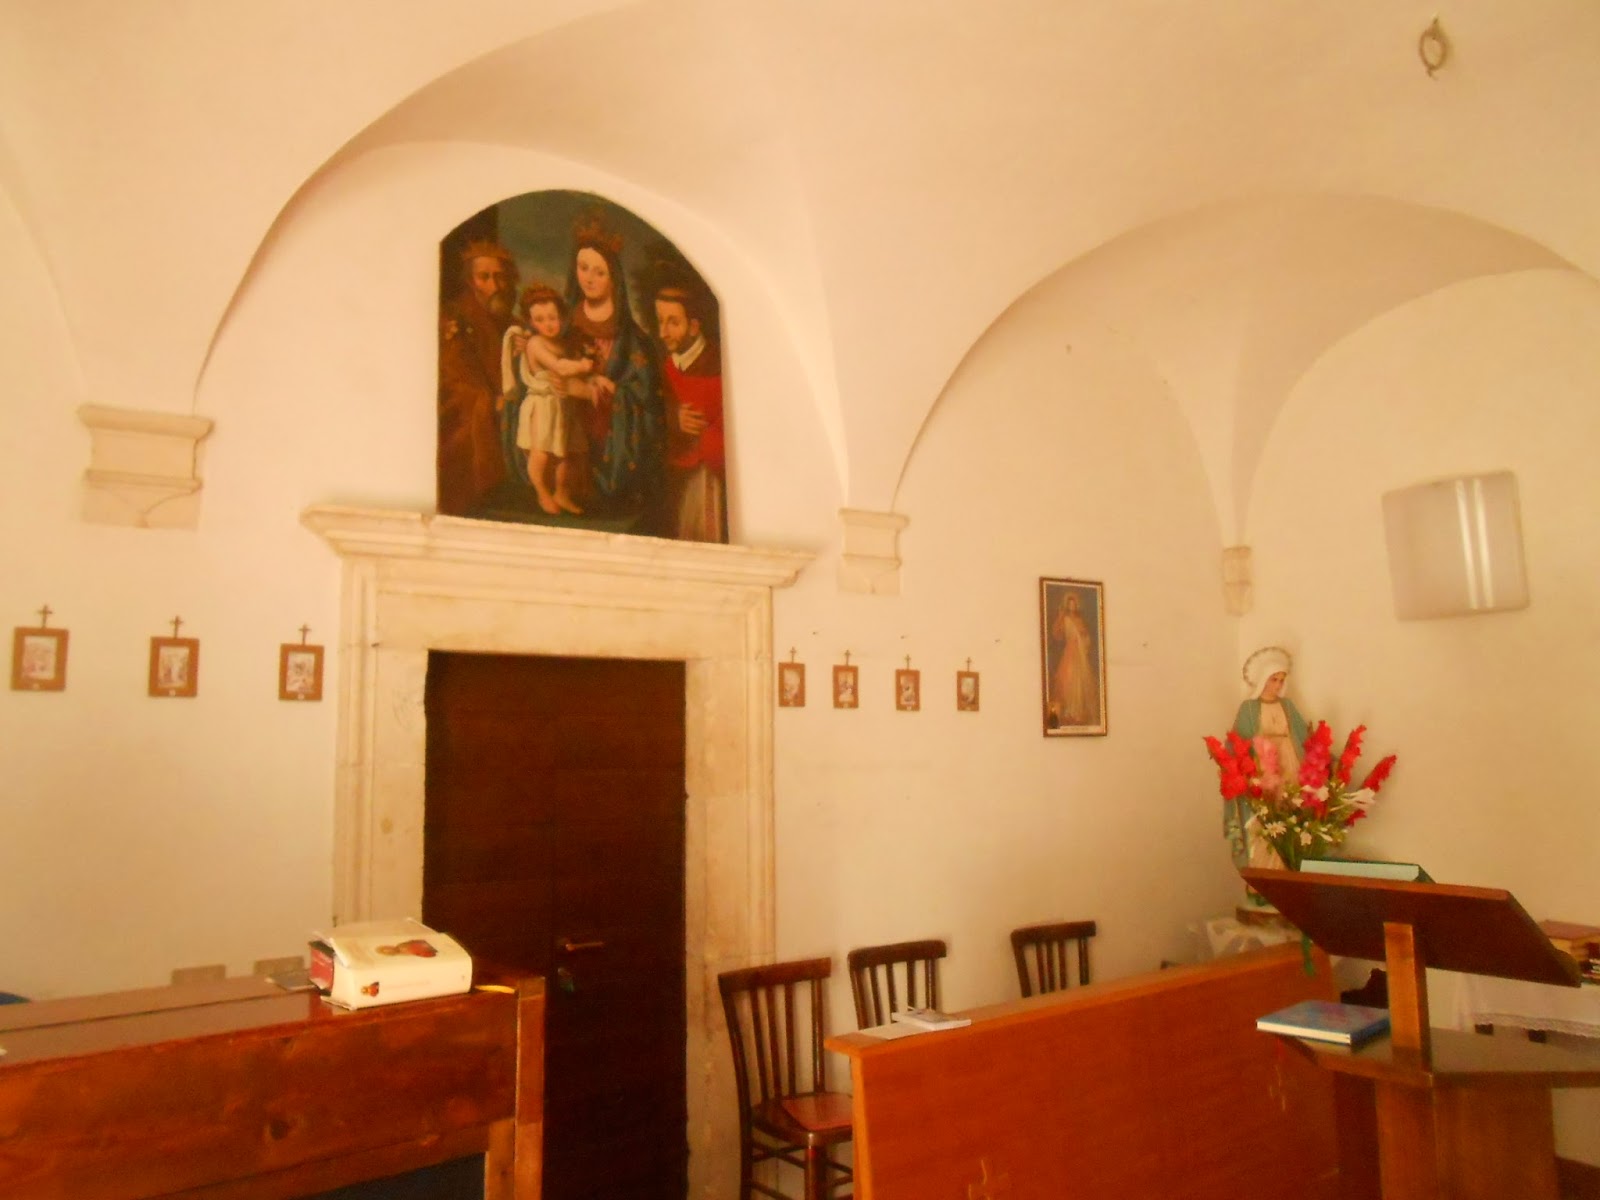 L'Aquila, ragazzi entrano in un convento e una coppia fa sesso nel confessionale: suore terrorizzate